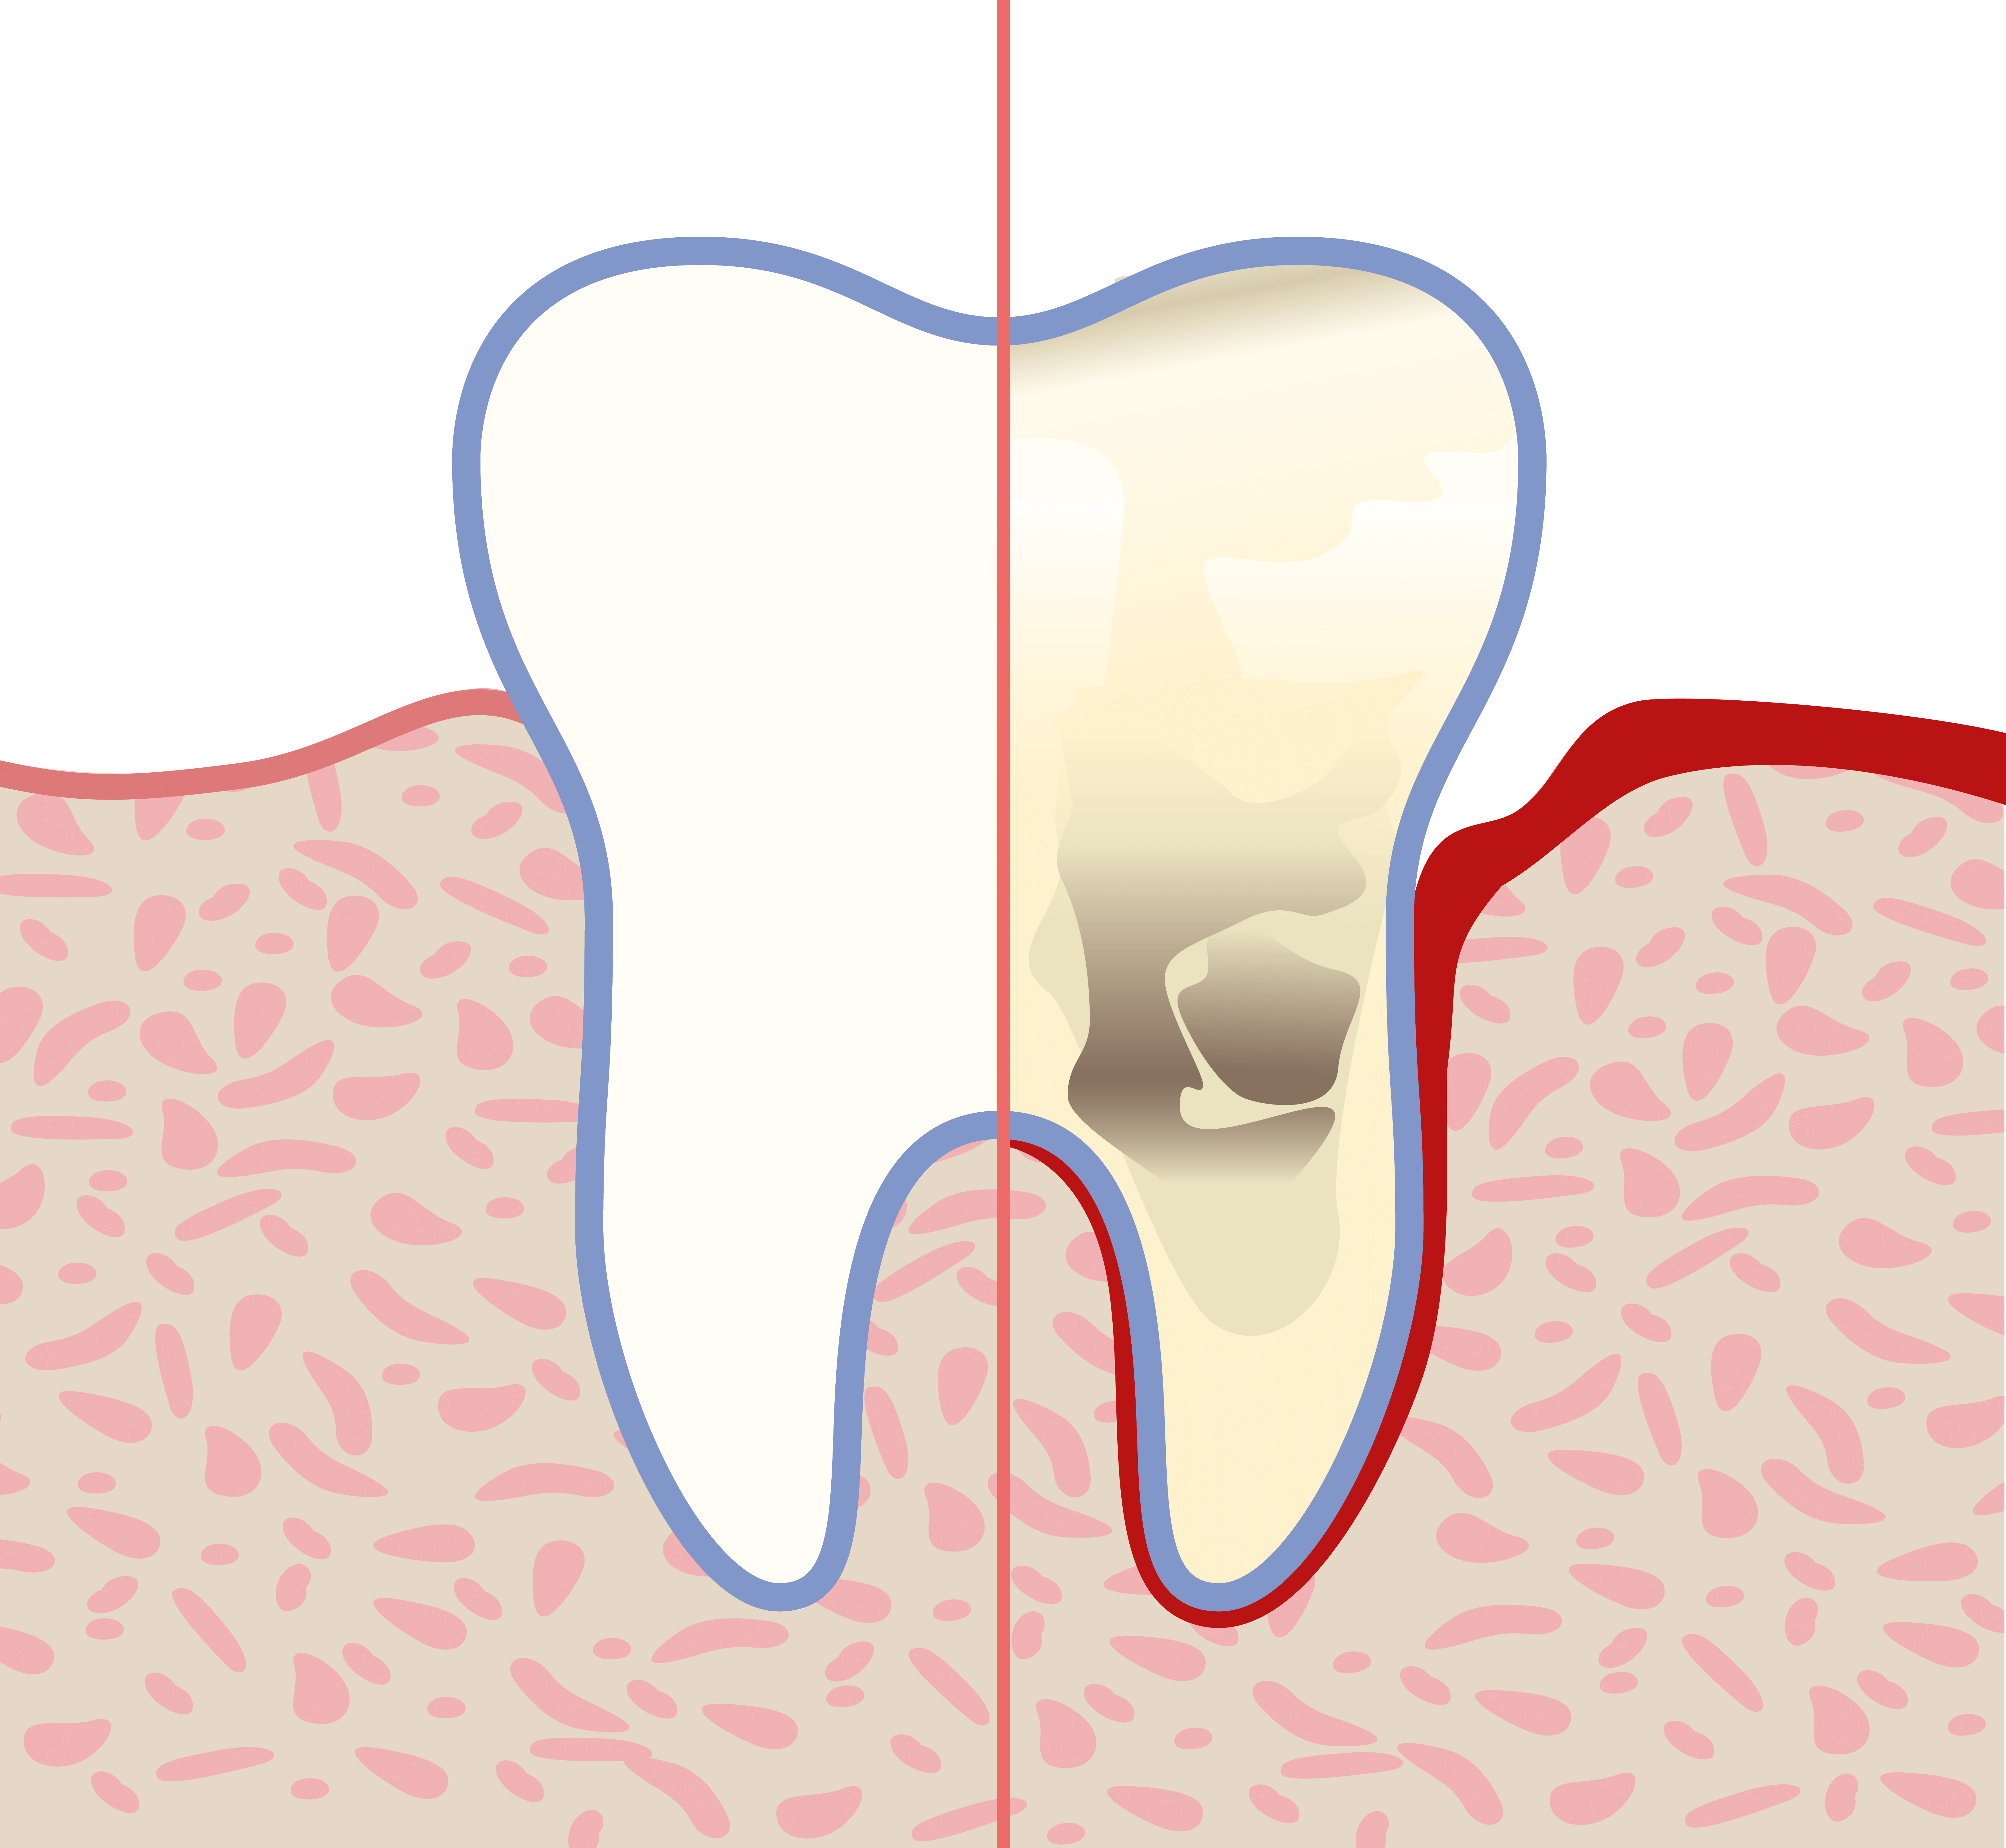 Plaque als Ursache für Zahnfleischentzündungen